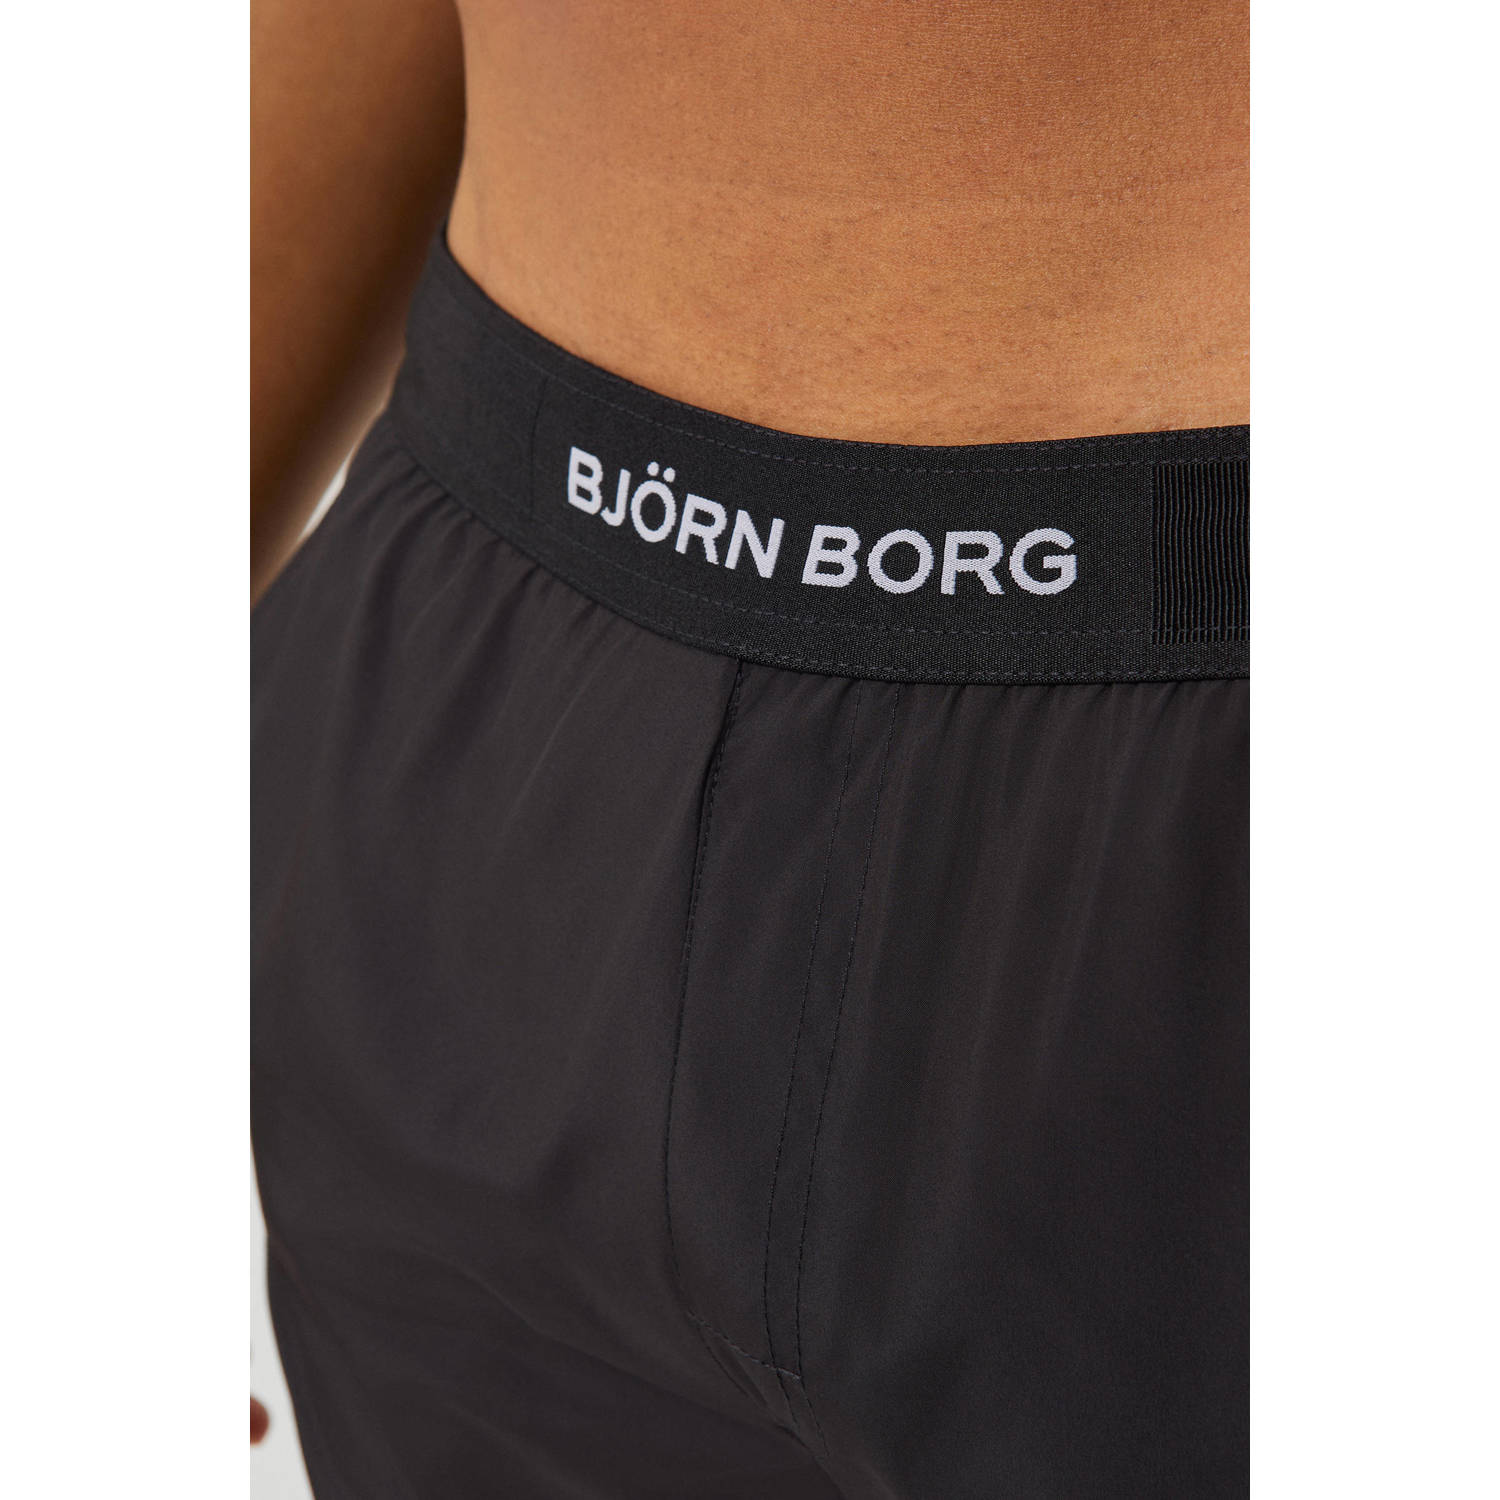 Björn Borg PREMIUM zwemshort zwart